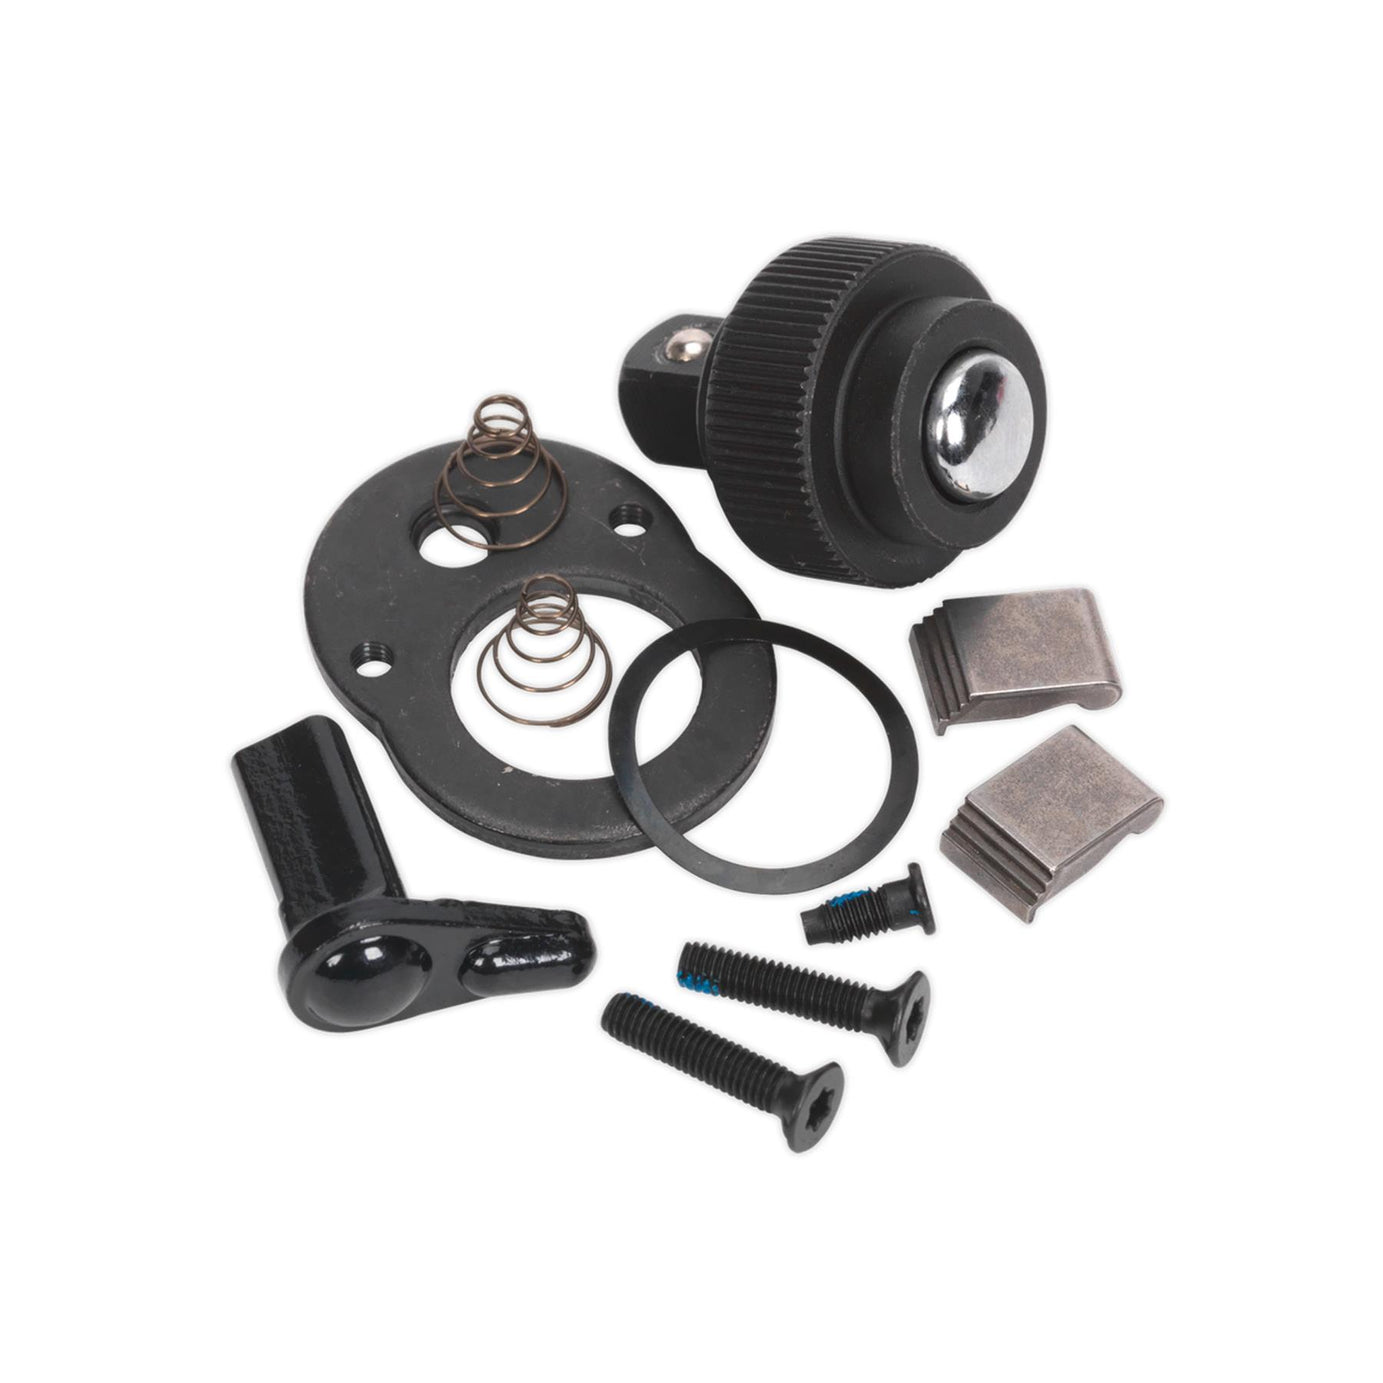 Sealey Repair Kit for AK6672.02 & AK667238M 3/8"Sq Drive